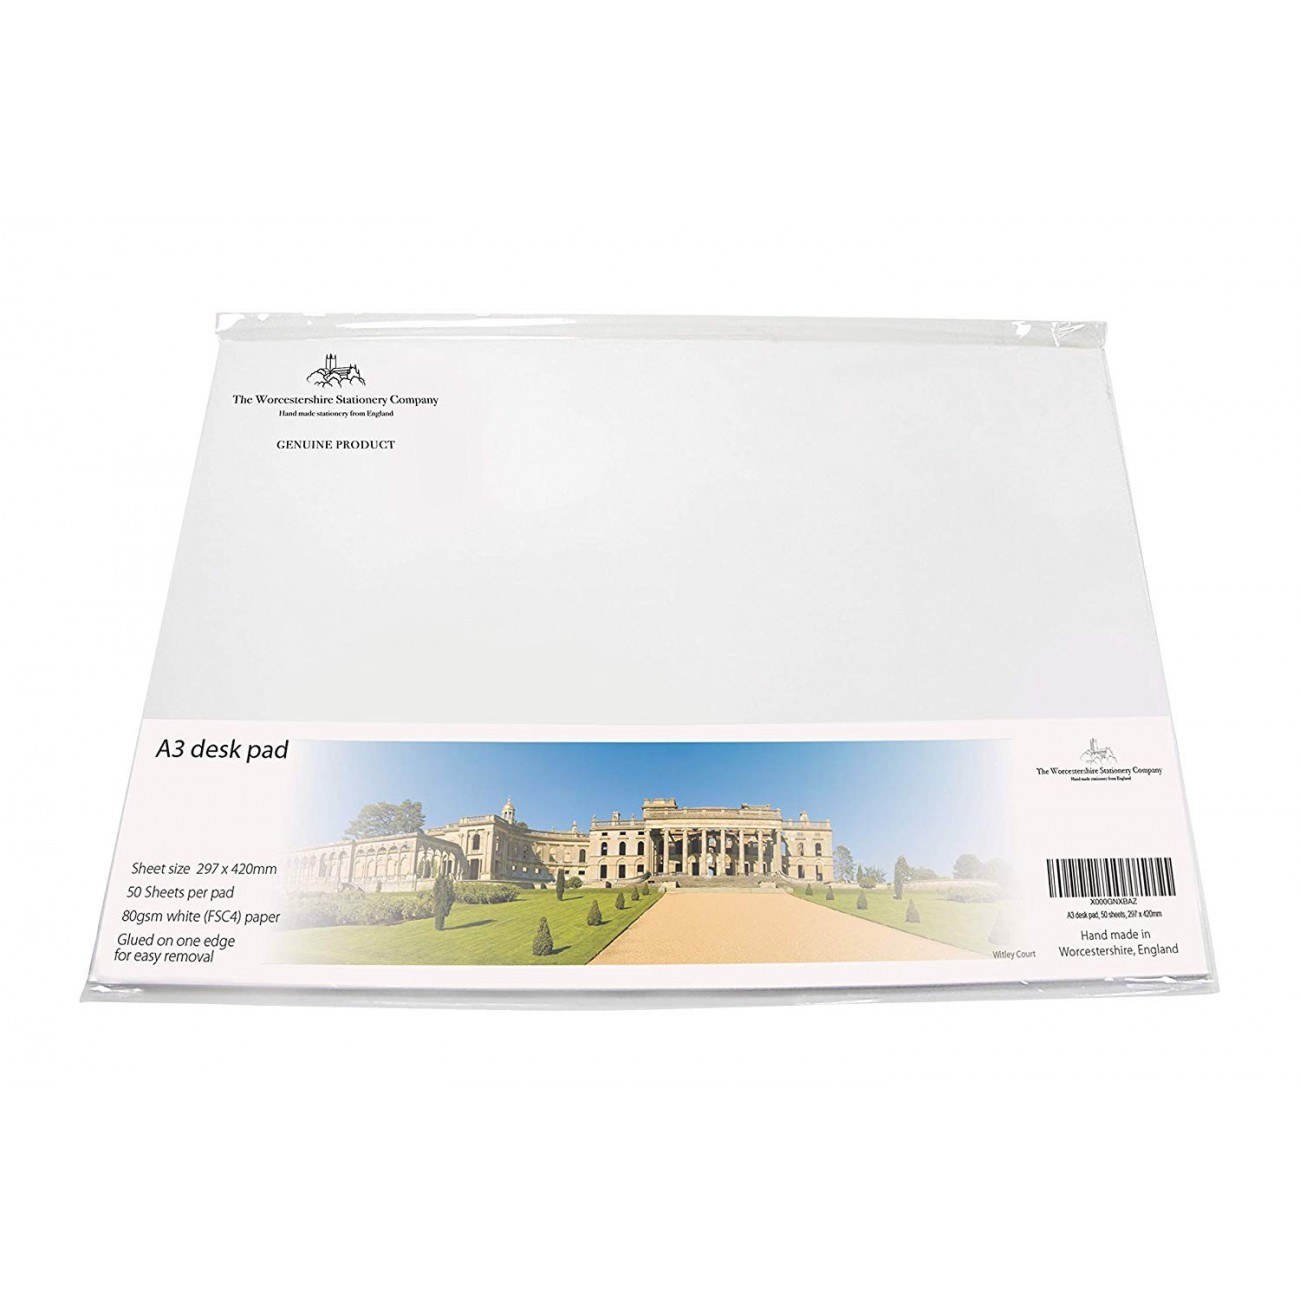 Worcestershire papelería empresa A3 Desk Pad, 50 hojas por